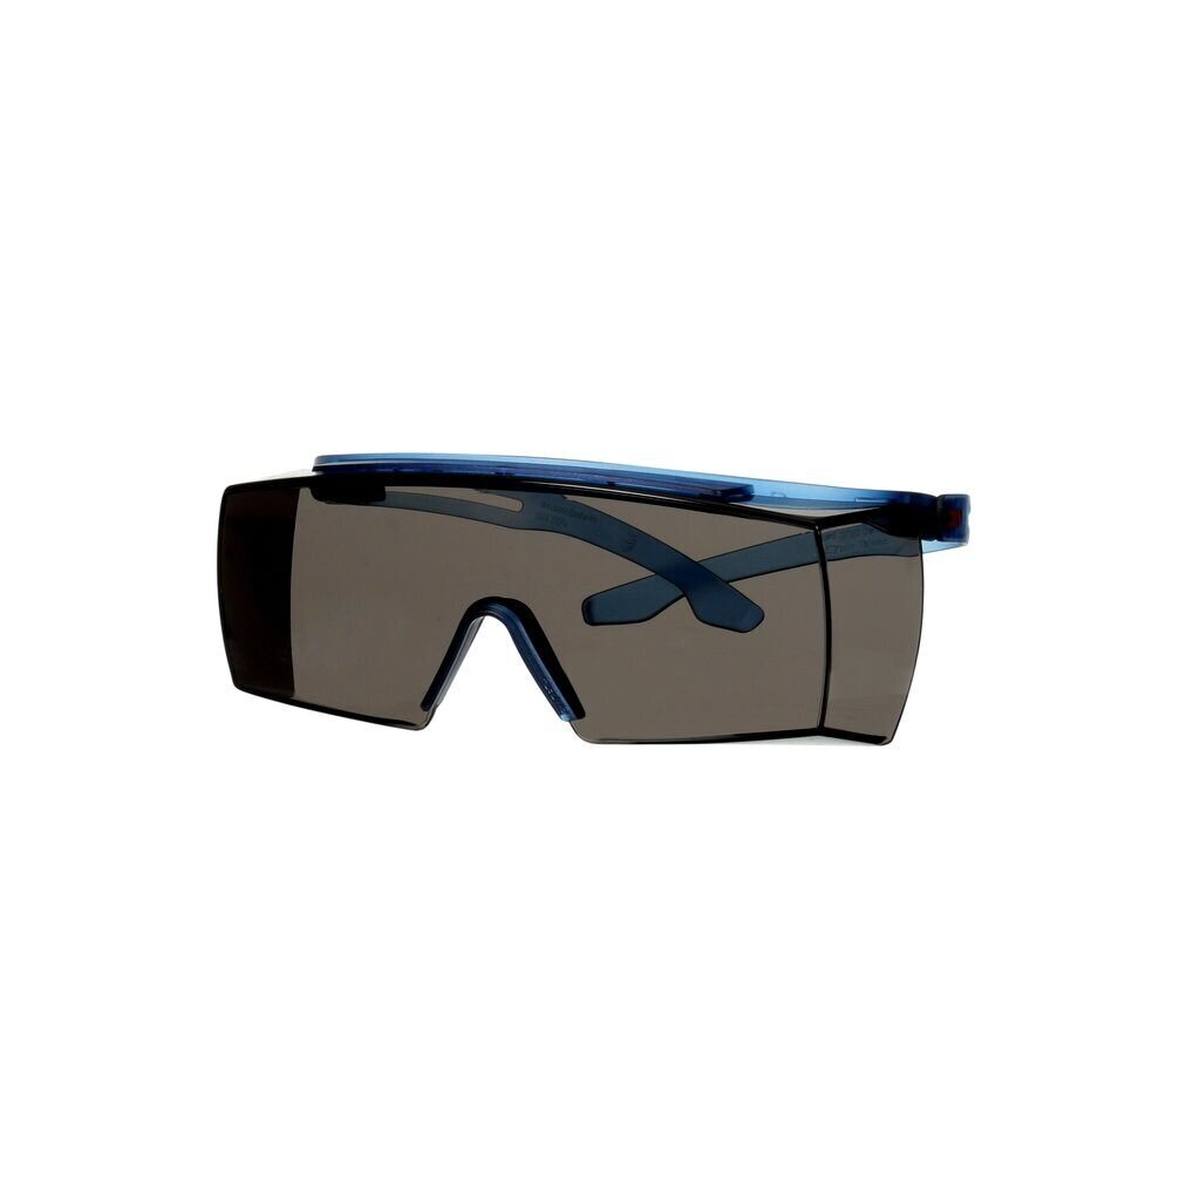 3M SecureFit 3700 Überbrille, blaue Bügel, integrierter Augenbrauenschutz, Scotchgard Anti-Beschlag Beschichtung (K&N), graue Scheibe, winkelverstellbar, SF3702XSGAF-BLU-EU